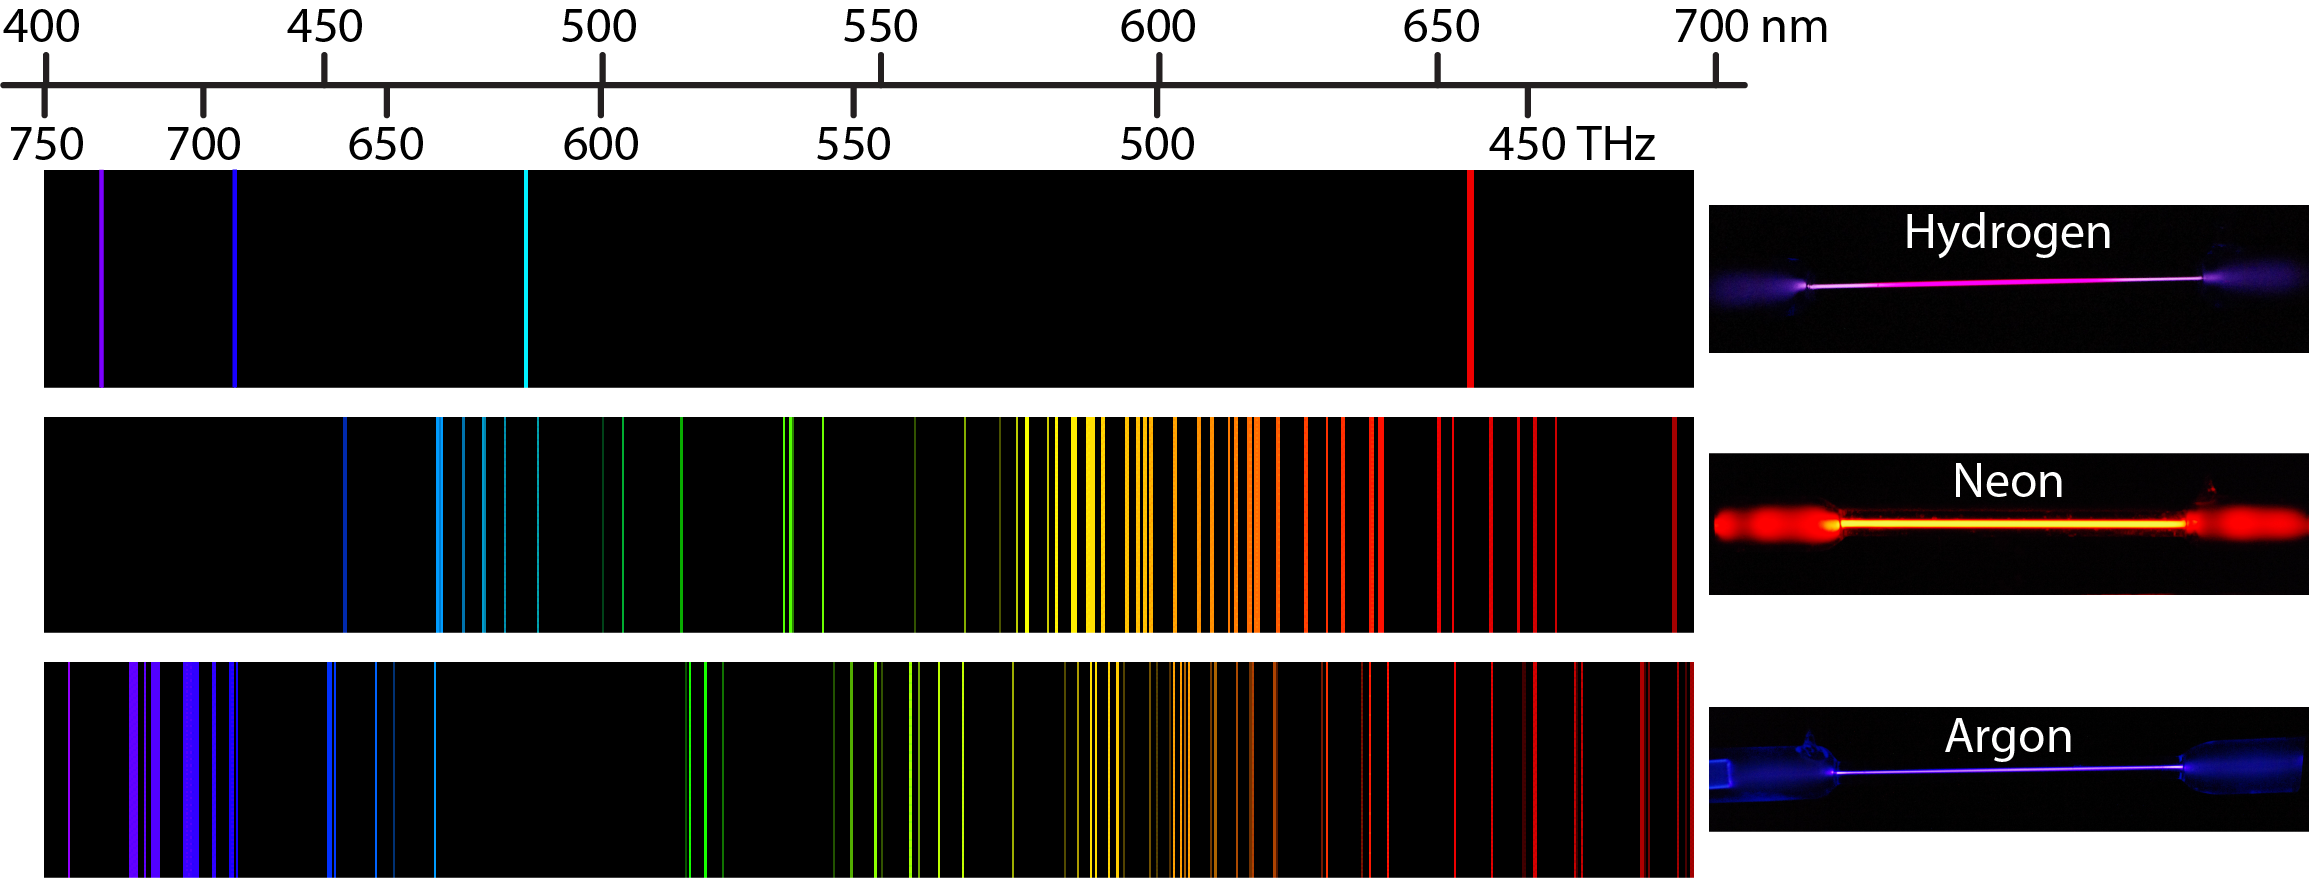 Se muestra una imagen con 3 filas. Al otro lado de la parte superior hay una escala que comienza a 400 nm a la izquierda y se extiende a 700 nm hacia la derecha. La fila superior muestra el espectro de emisión para hidrógeno. Este espectro muestra bandas individuales en las regiones violeta, índigo, azul y naranja. Hay una lámpara de descarga de hidrógeno a la derecha que muestra el color púrpura general. La segunda fila muestra el espectro de emisión para neón. Este espectro muestra muchas bandas en el espectro visible, de azul a rojo, con una mayor concentración de bandas en la región roja y naranja. Hay una lámpara de descarga de neón a la derecha que muestra el color naranja general. La tercera fila muestra el espectro de emisión para argón. Este espectro muestra muchas bandas en el espectro visible, desde el índigo hasta el rojo, con una mayor concentración de bandas en la región azul e índigo. Hay una lámpara de descarga de argón a la derecha que muestra el color violeta general. Es importante señalar que cada una de las bandas de color para los espectros de emisión de los elementos coincide con una longitud de onda específica de luz. Extender una línea vertical desde las bandas hasta la escala por encima o por debajo del diagrama coincidirá con la banda con una medida específica en la escala.